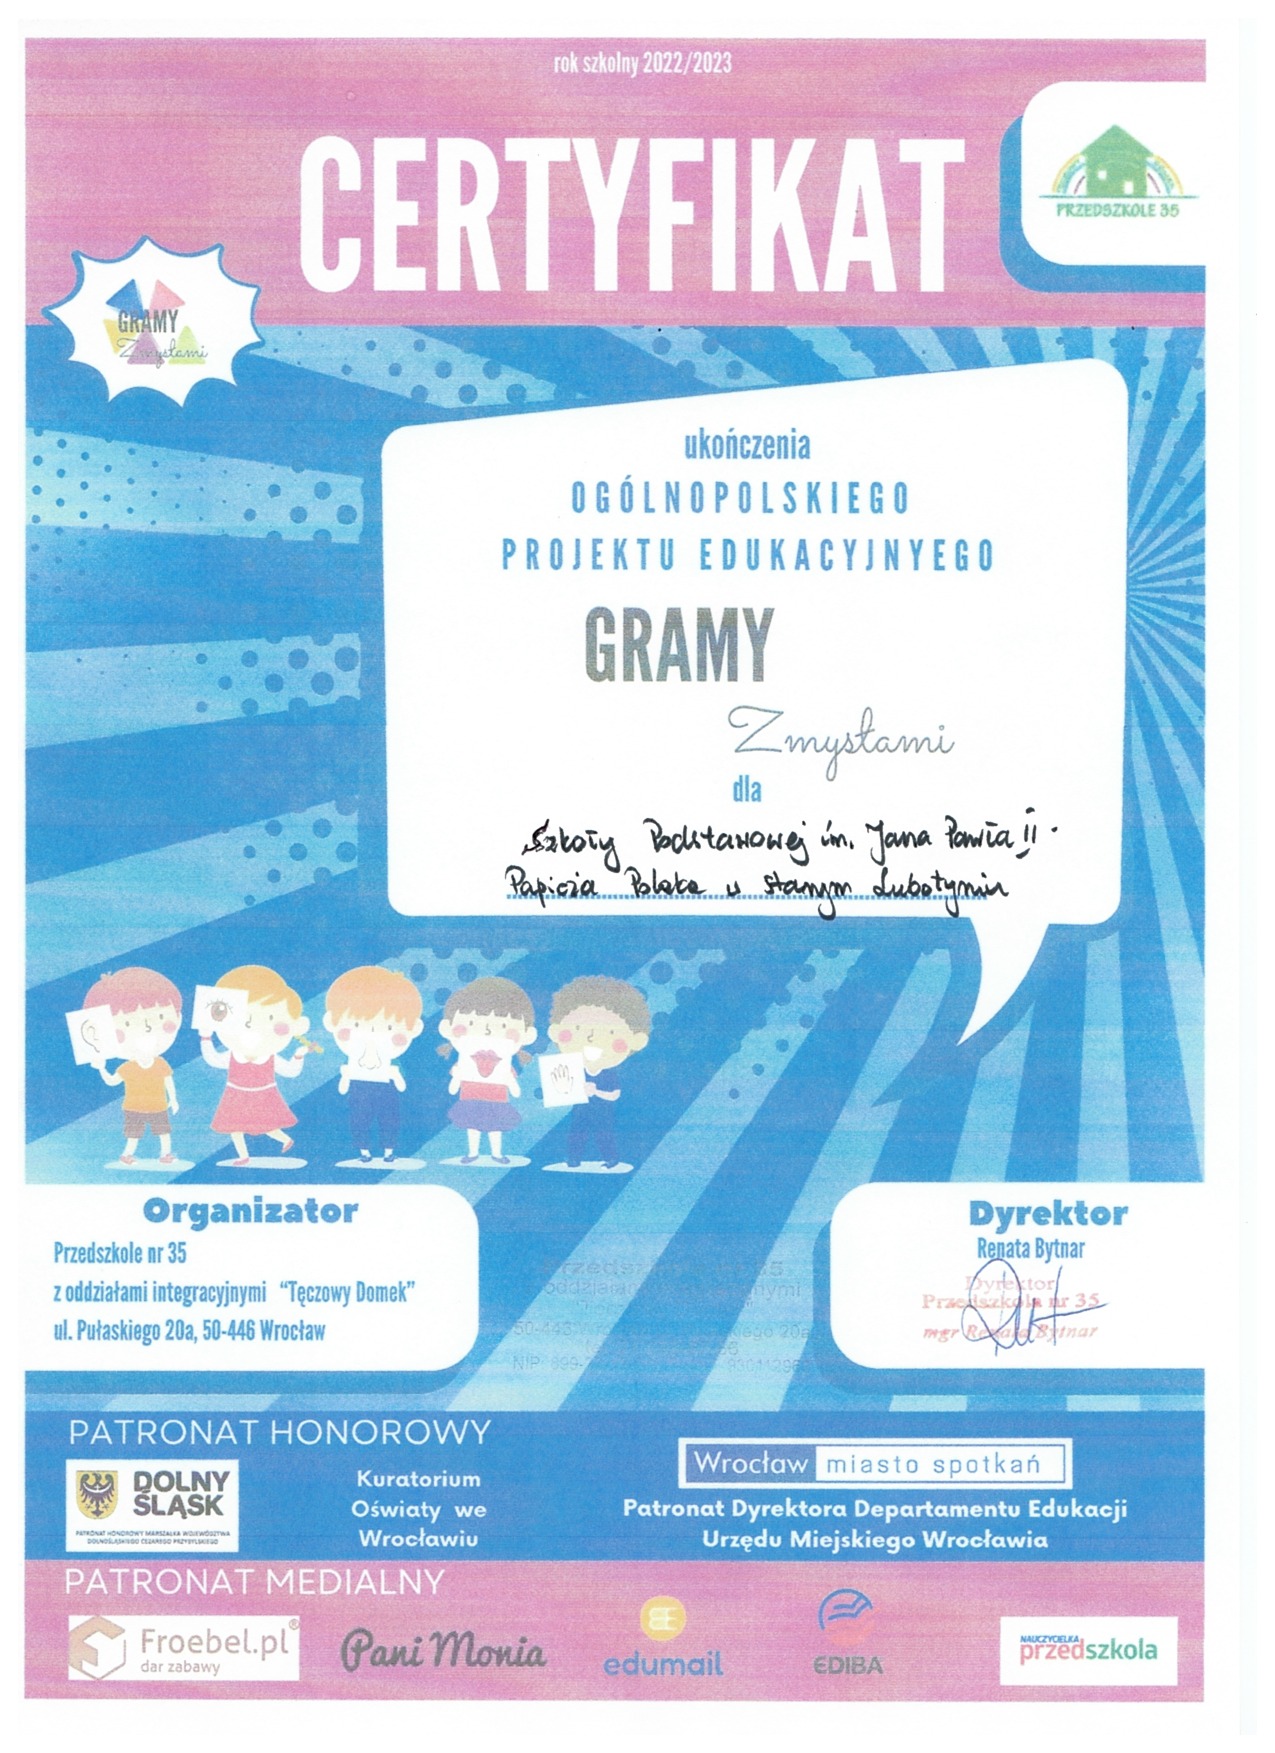 Certyfikat potwierdzający udział w projekcie edukacyjnym "Gramy zmysłami"